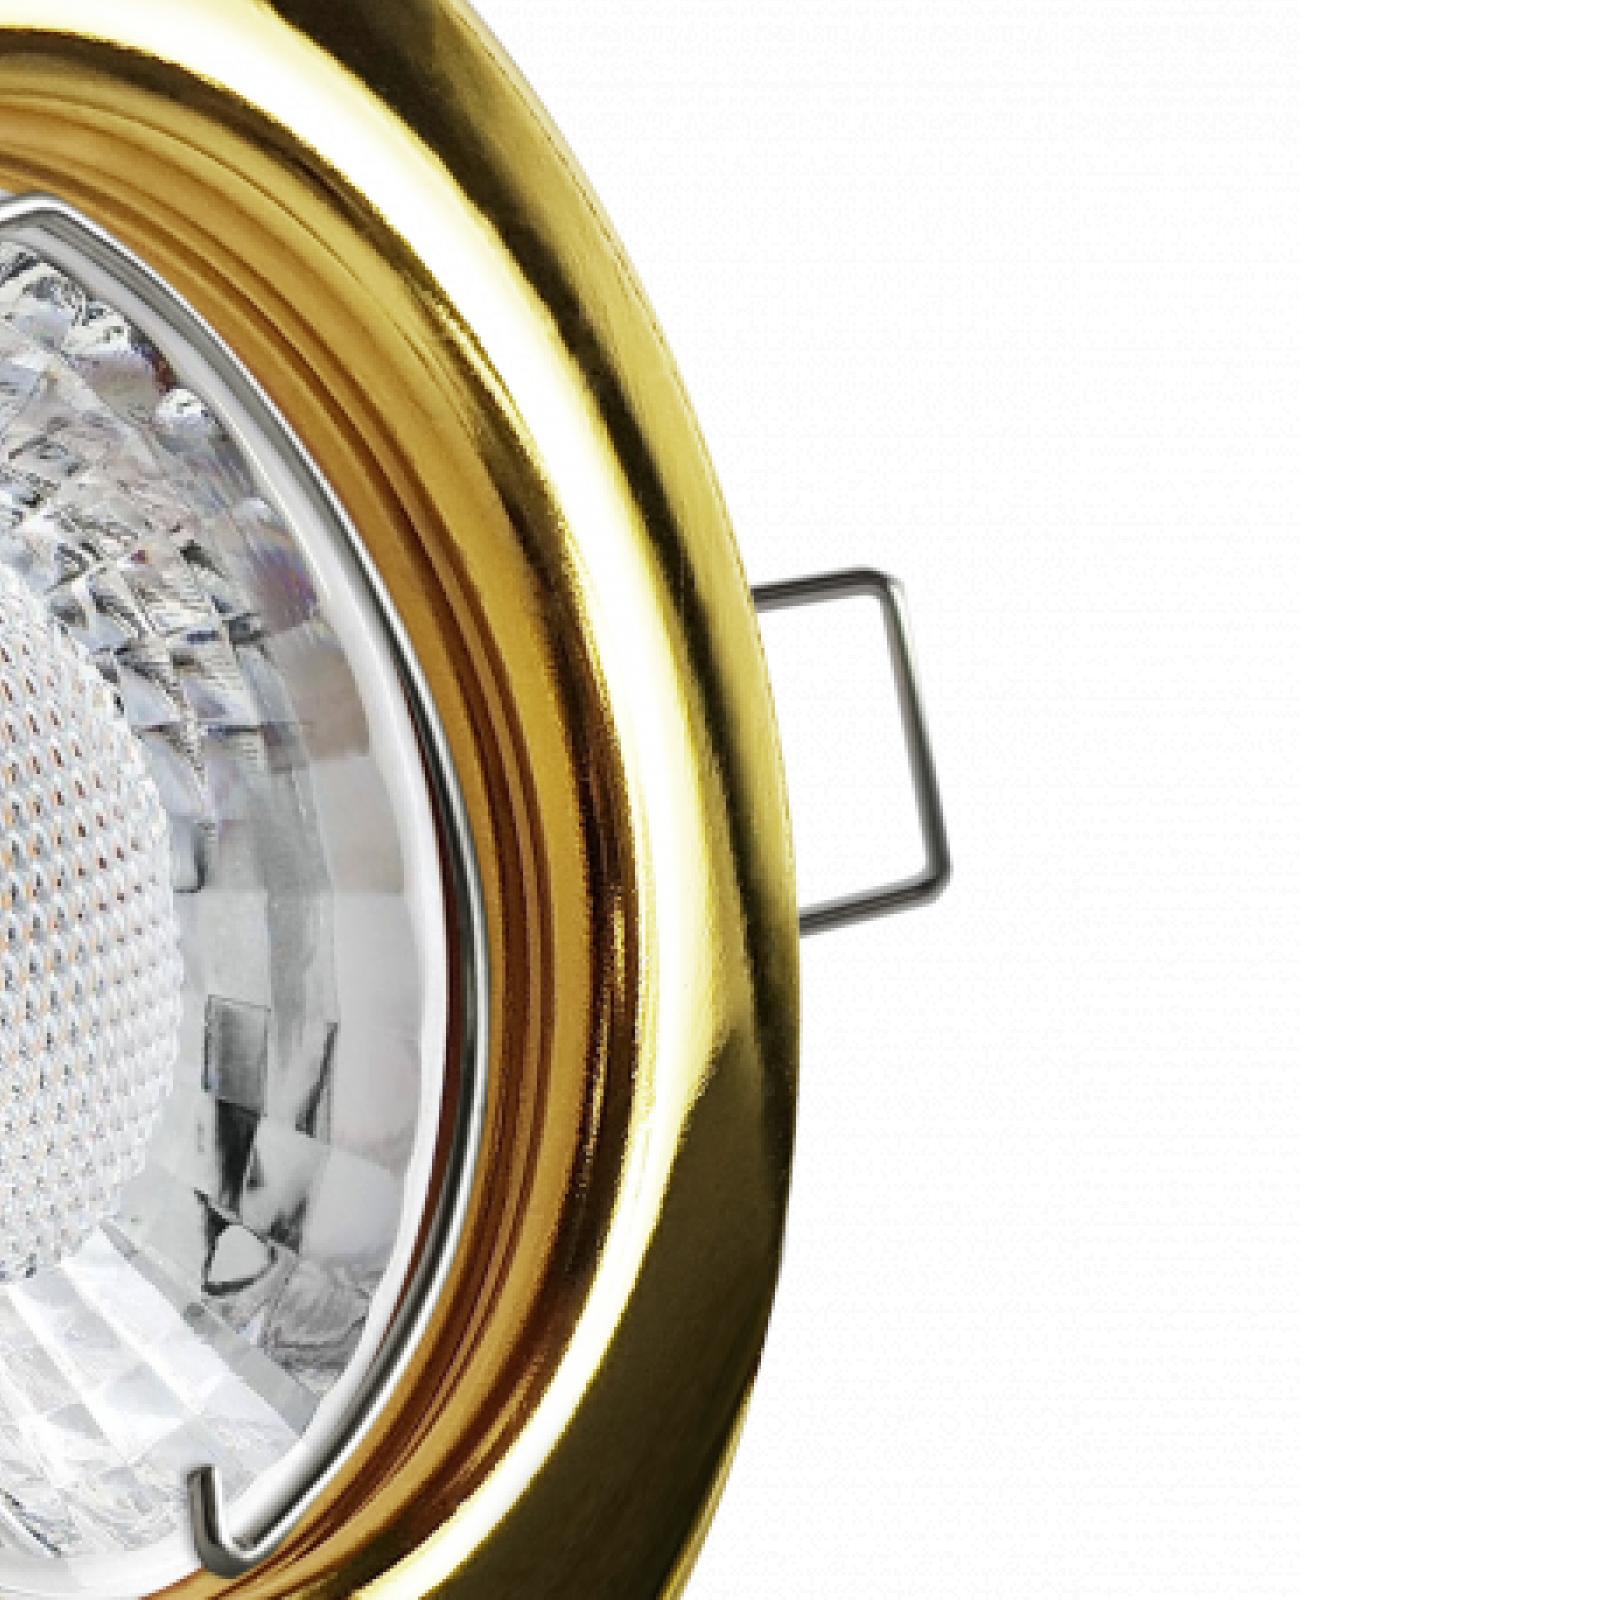 LED Einbaustrahler Gold glänzend | Runder Einbauspot | Lochmaß Ø 55mm - 75mm | Einbautiefe 64mm | Anschlussfertig mit GU10 230V Fassung 